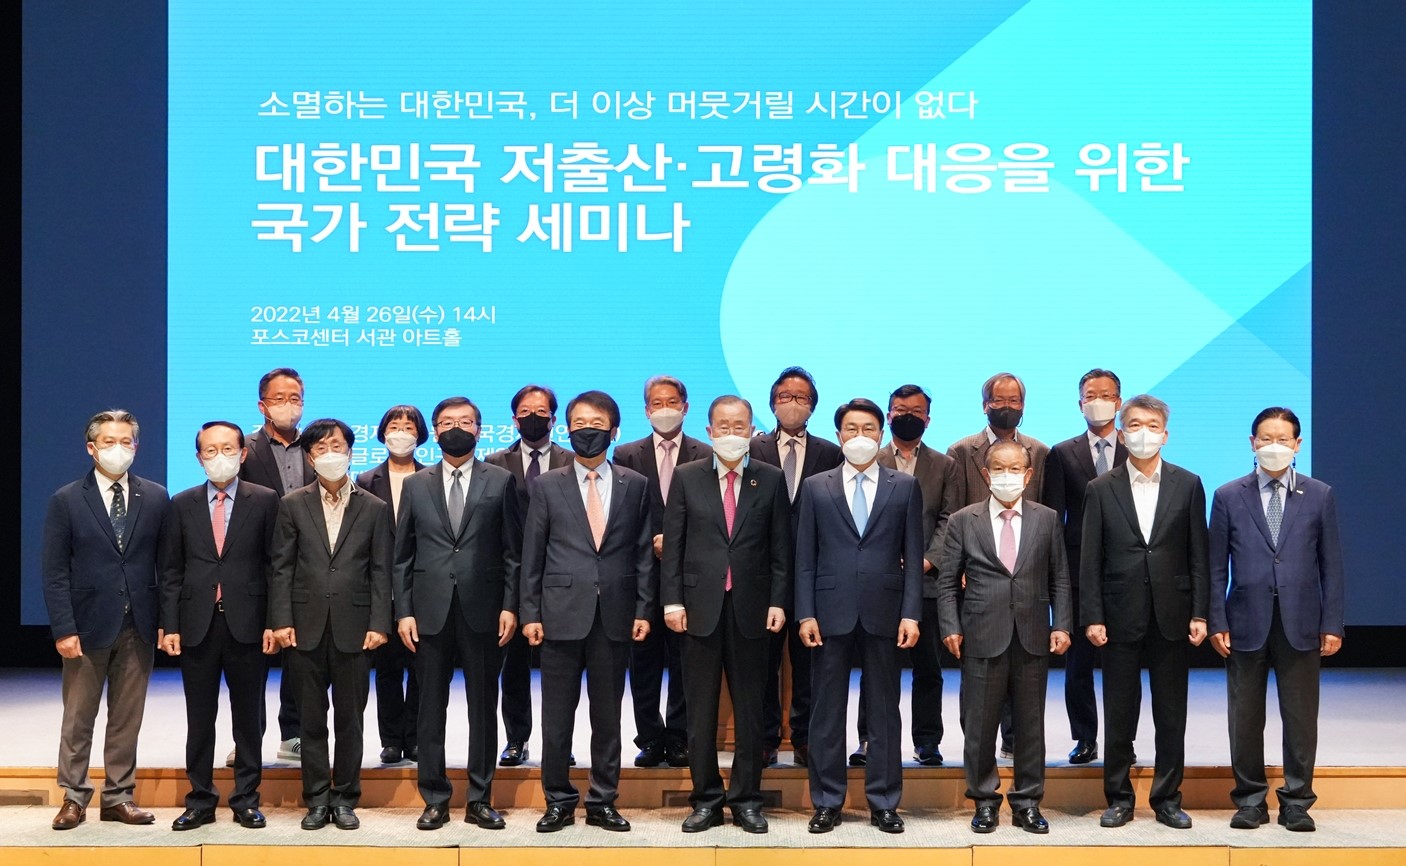 4월 26일 서울 포스코센터에서 열린 대한민국 저출산·고령화 대응 국가전략 세미나 기념 단체사진이다.